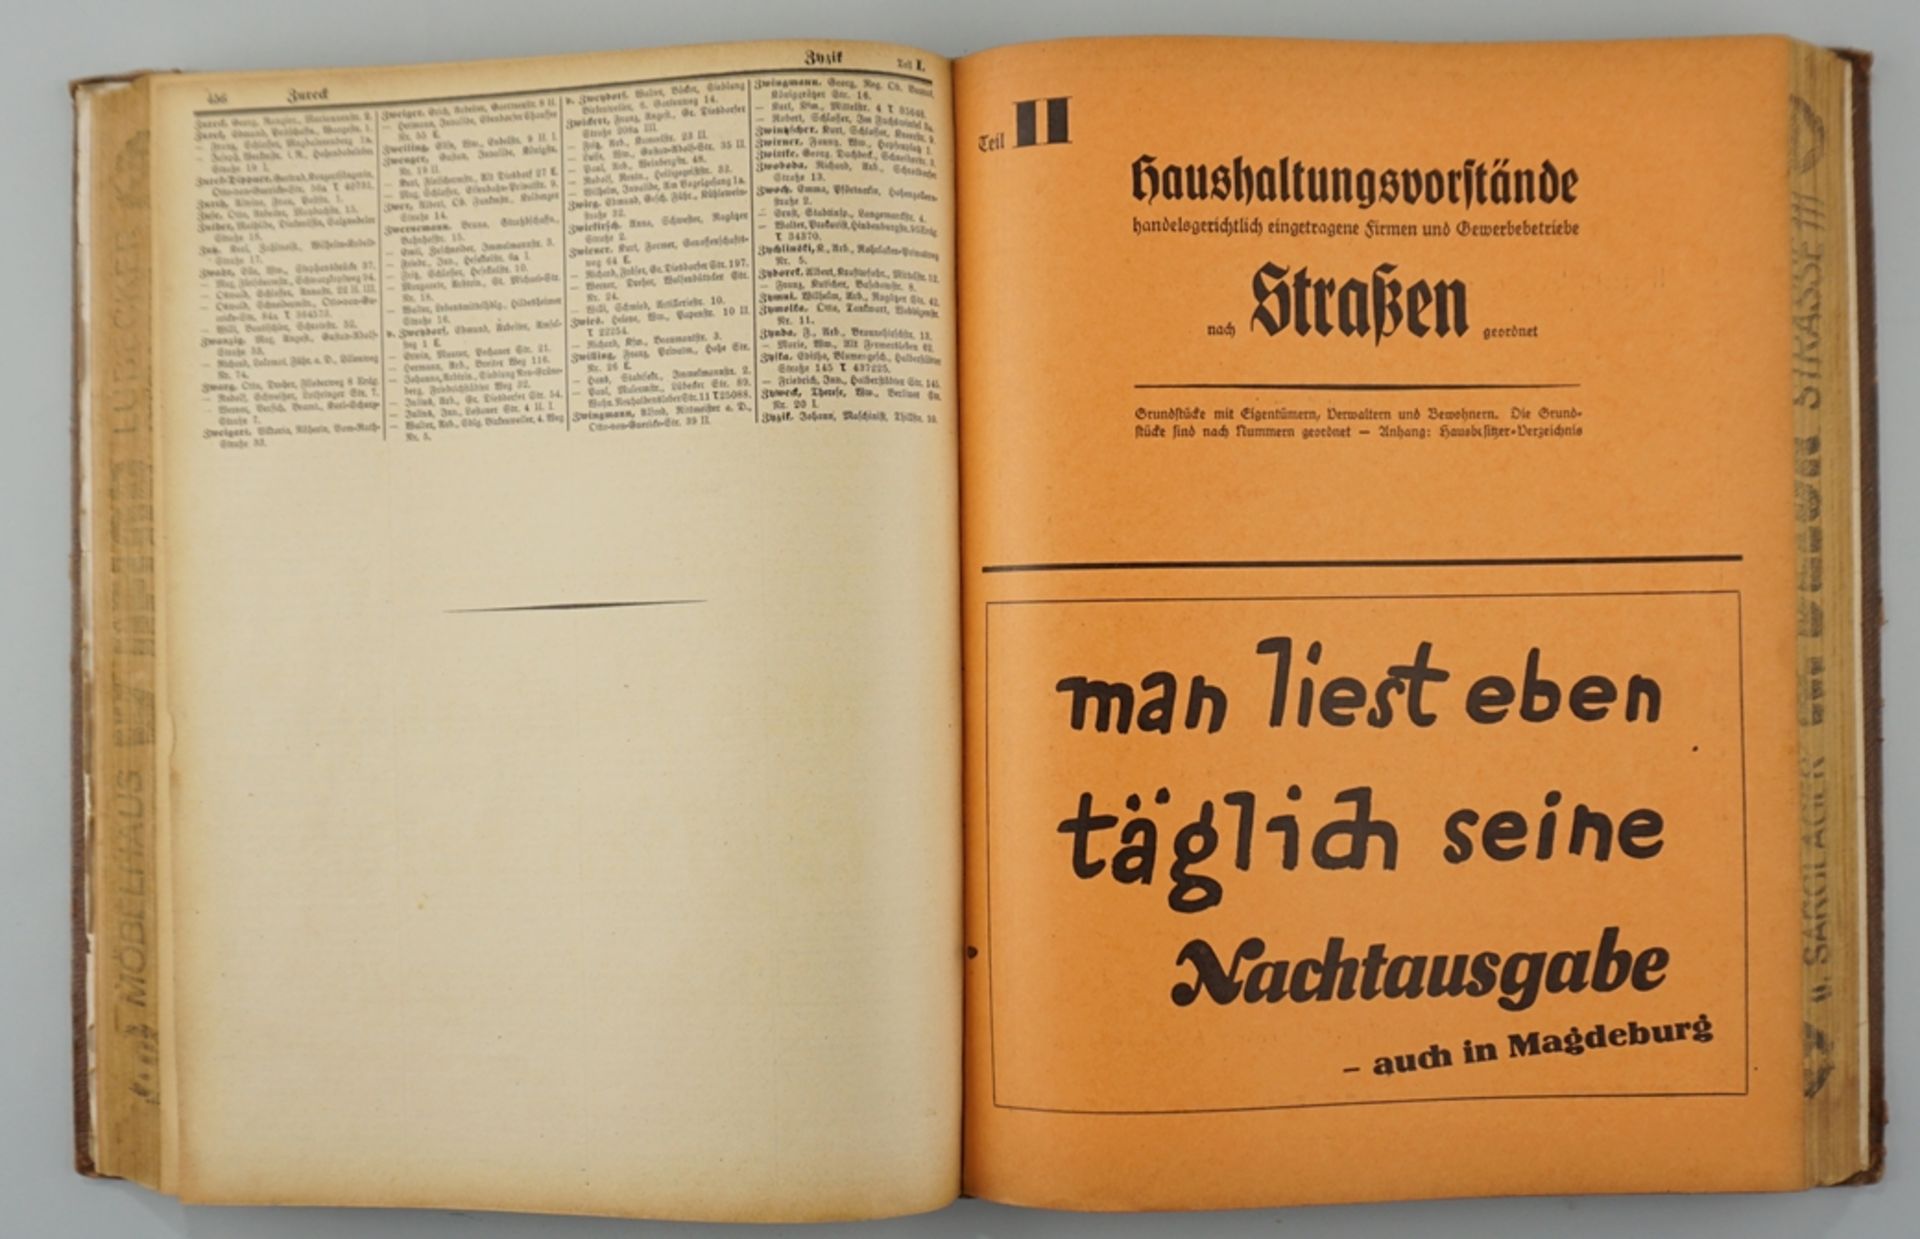 Magdeburger Adressbuch für das Jahr 1940 - Image 2 of 2